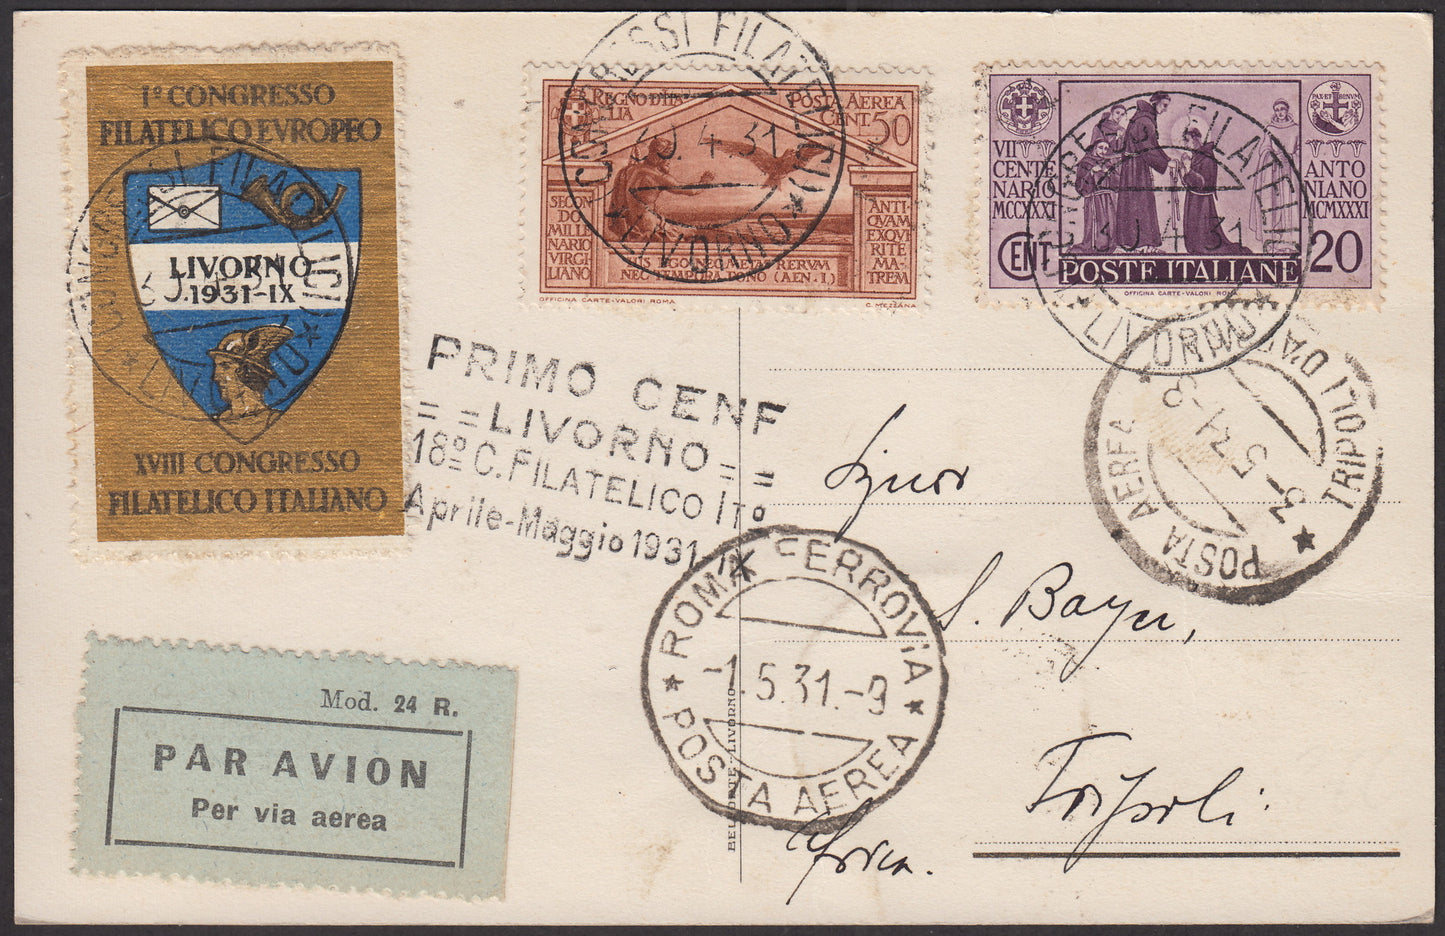 1931 - Primo volo Livorno - Tripoli via Roma 1/5/1931 affrancata con Antoniano c. 20 lilla + Virgilio c. 50 bruno rosso (292 + A21)